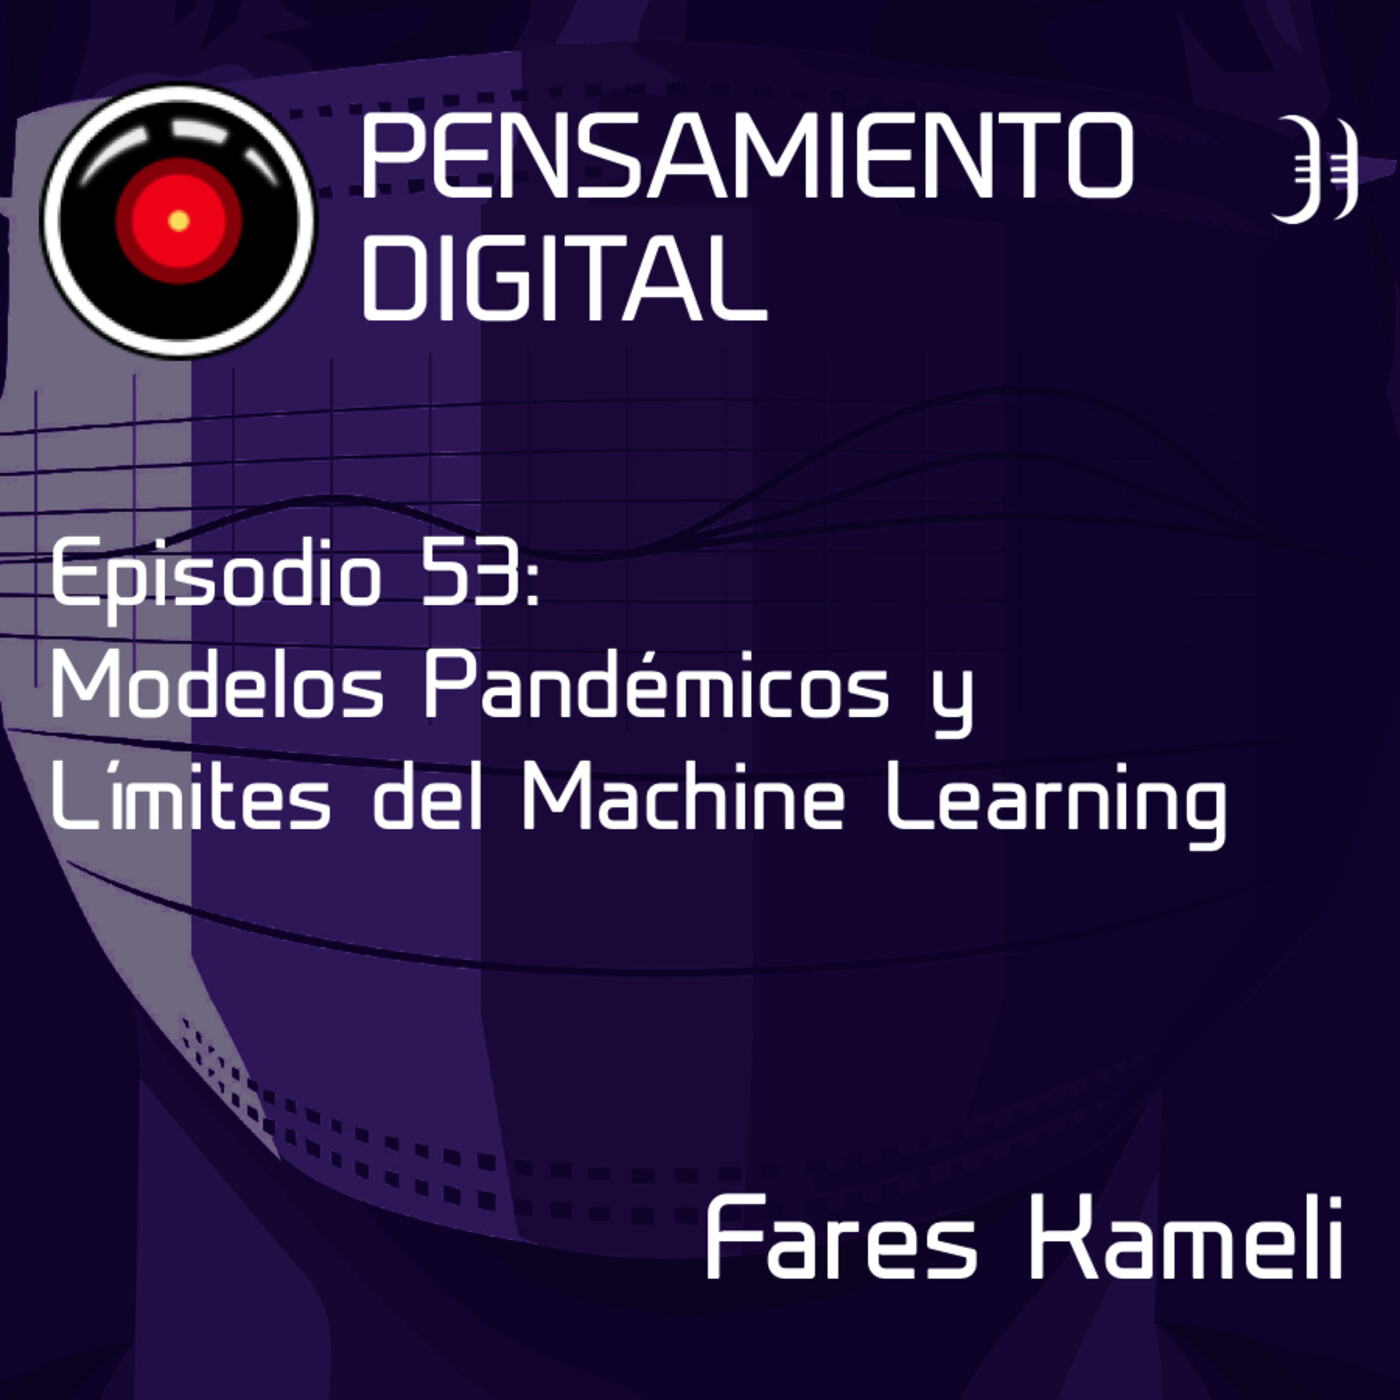 Episodio 53: Modelos pandémicos y límites del Machine Learning, con Fares Kameli